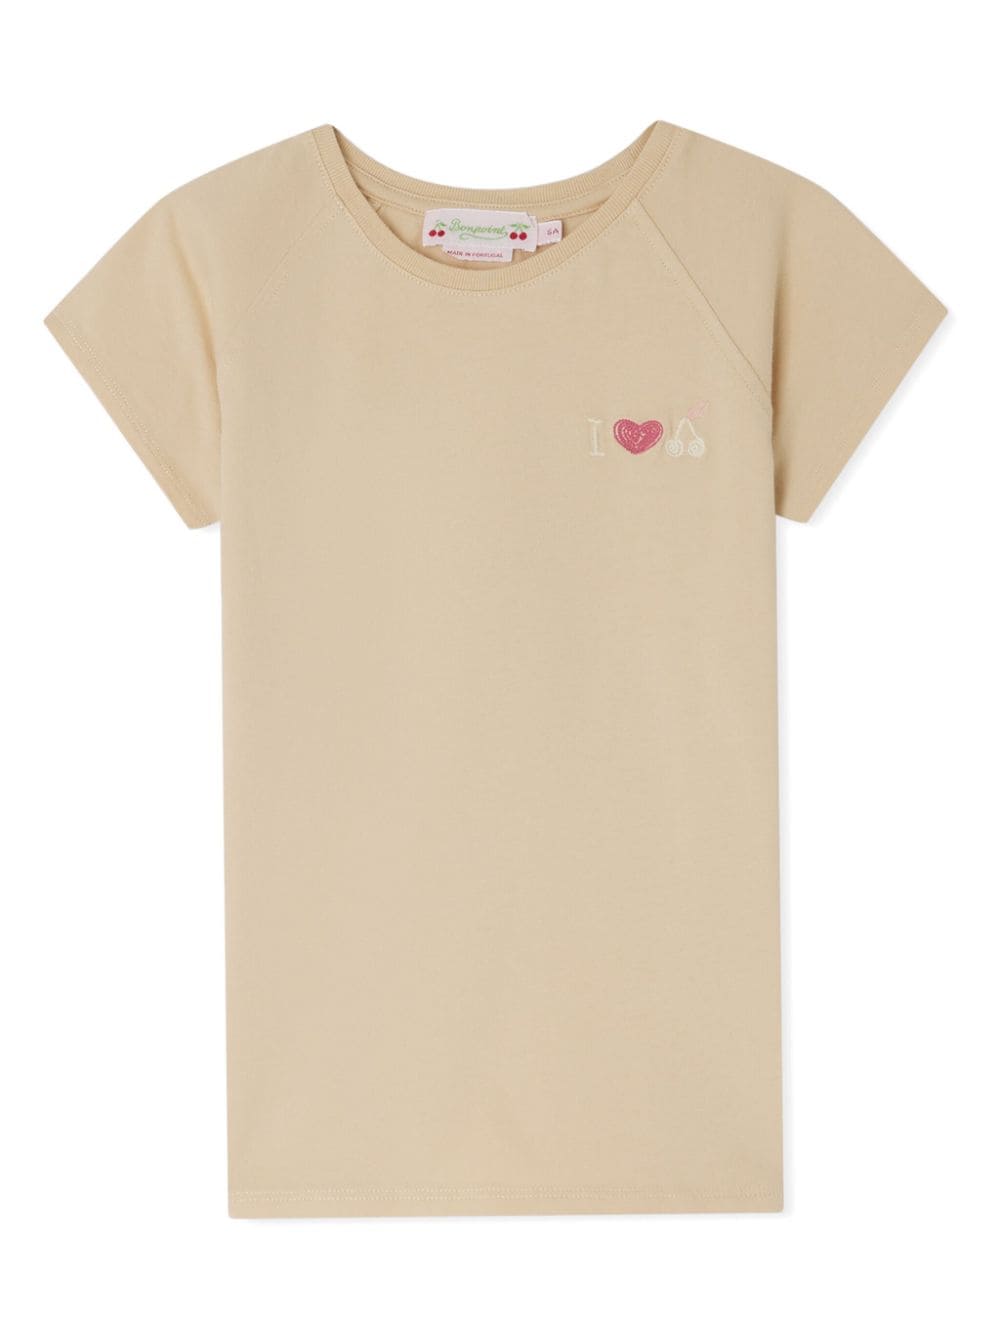 Bonpoint Kids' Asmae Cotton T-shirt In Neutrals